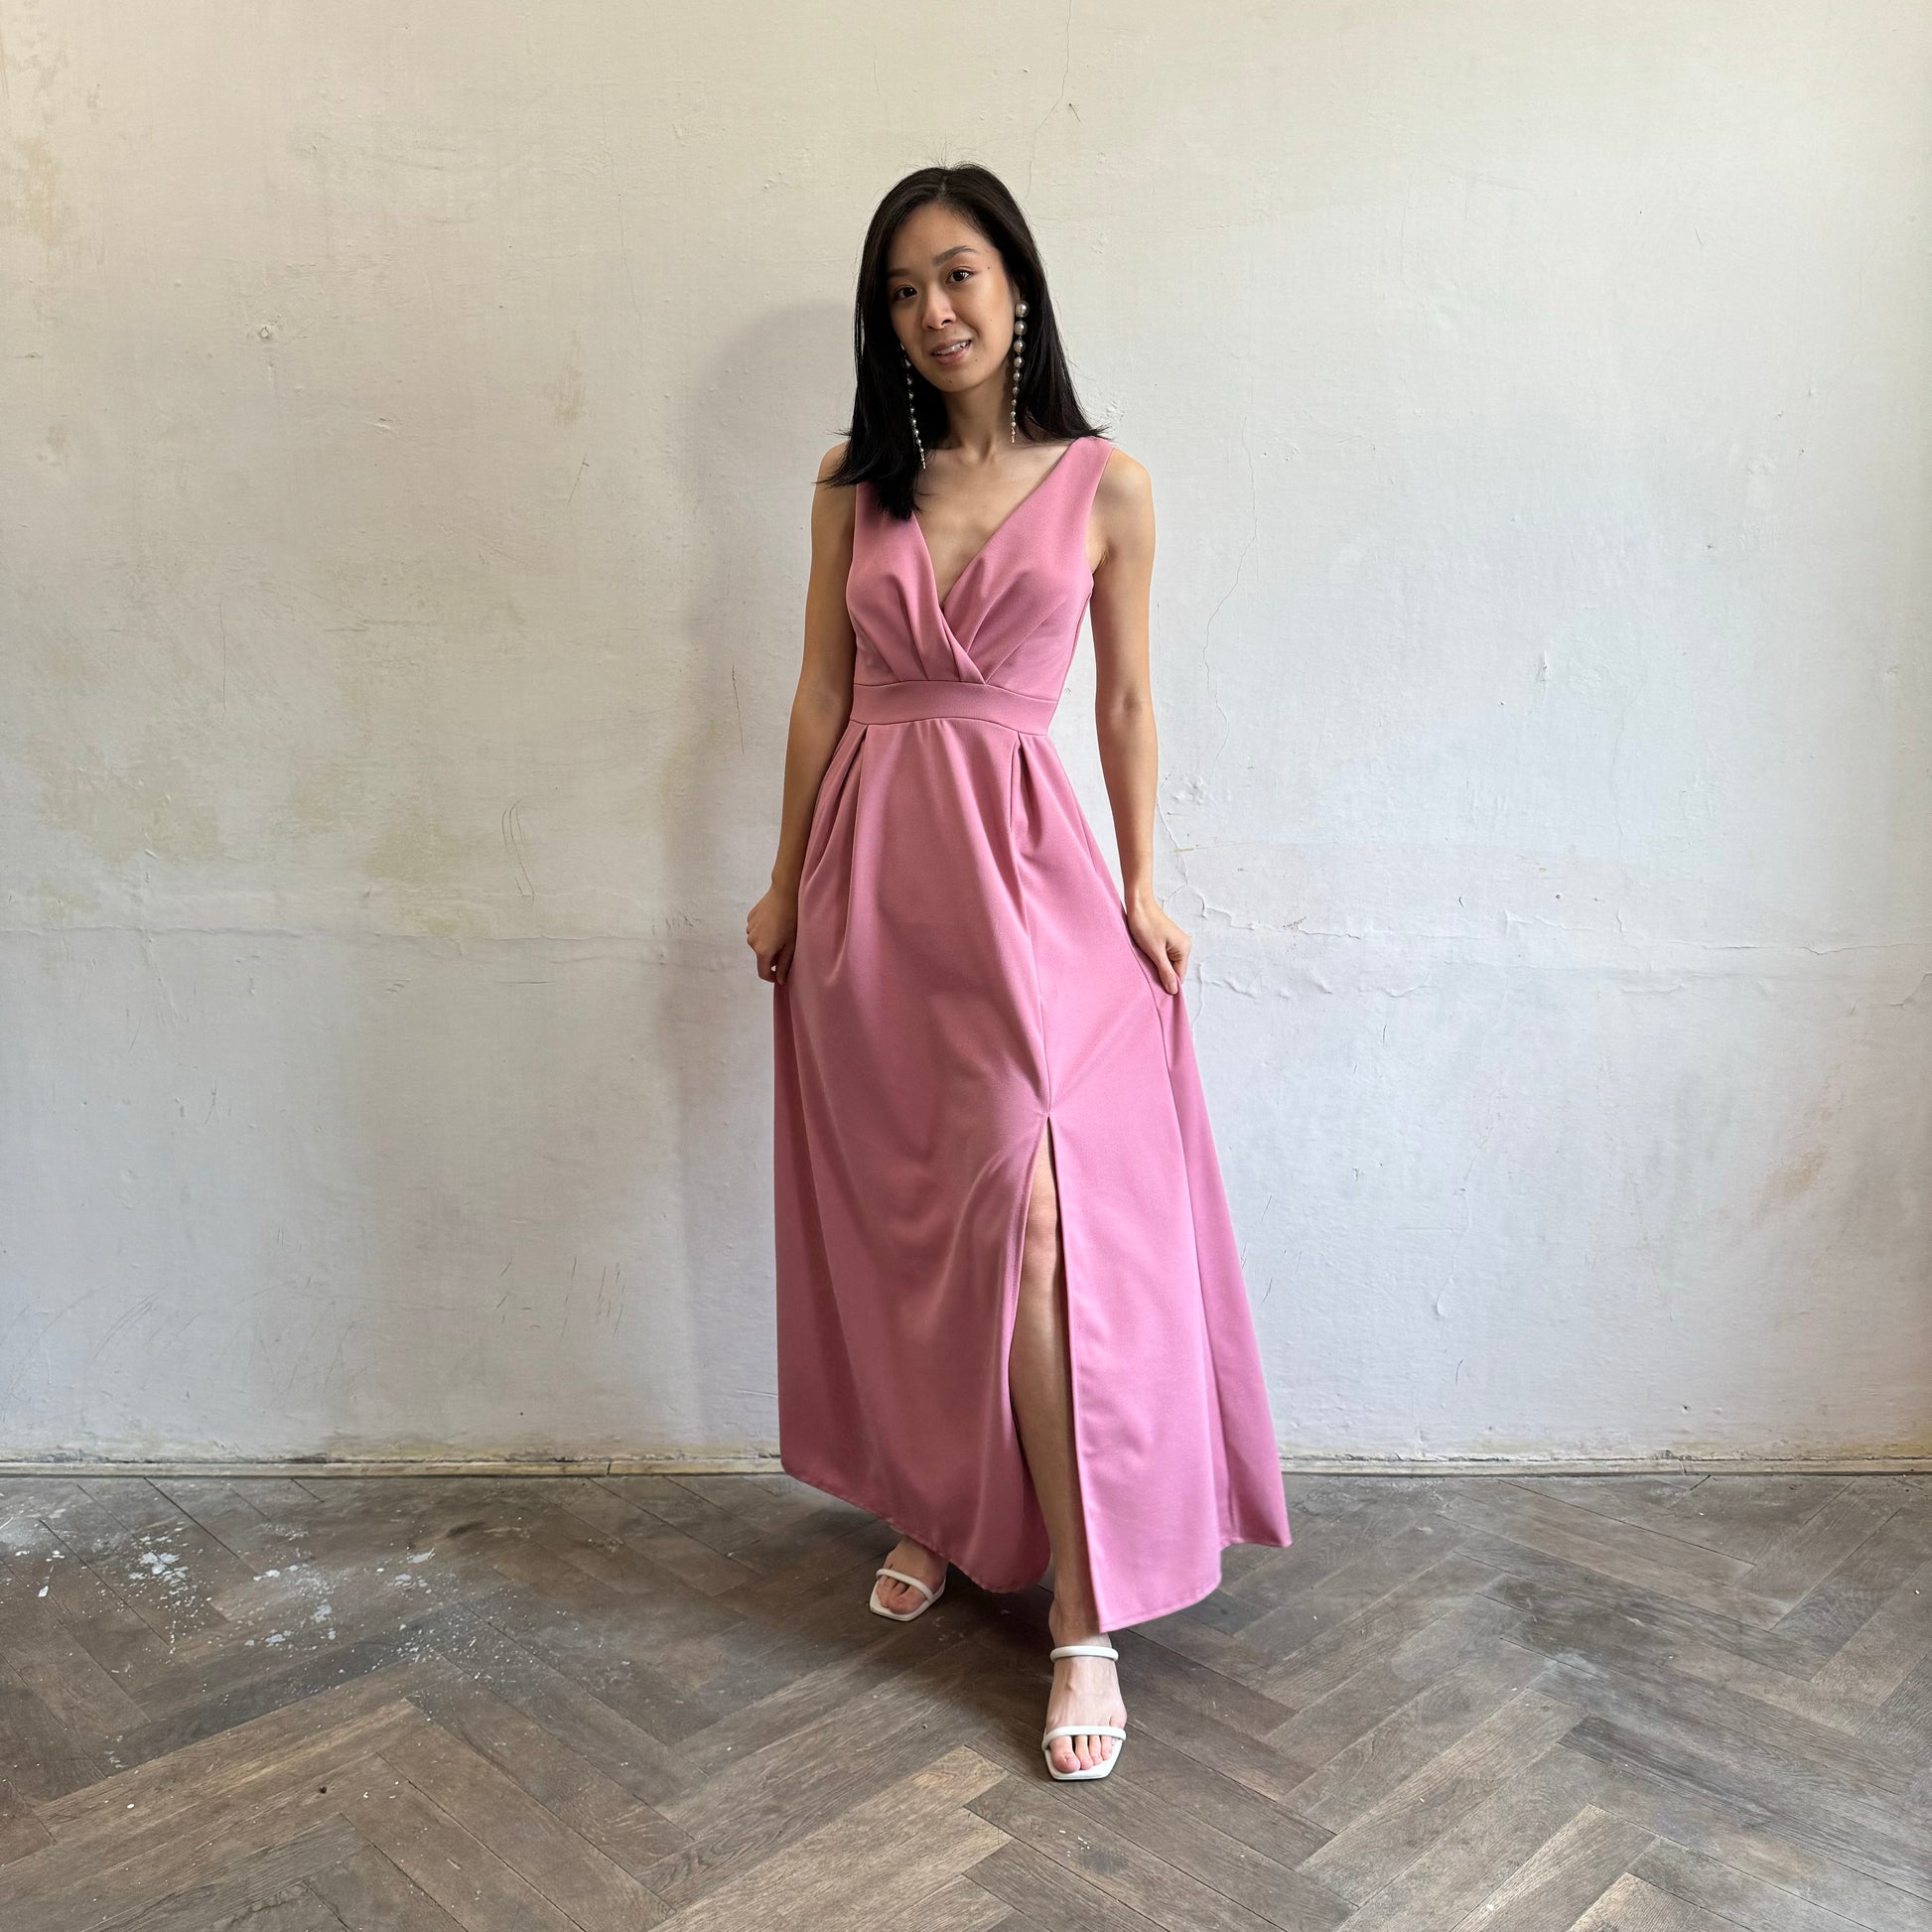 Modelka asijského původu pózující zepředu oblečená ve tmavě růžových společenských šatech s rozparkem